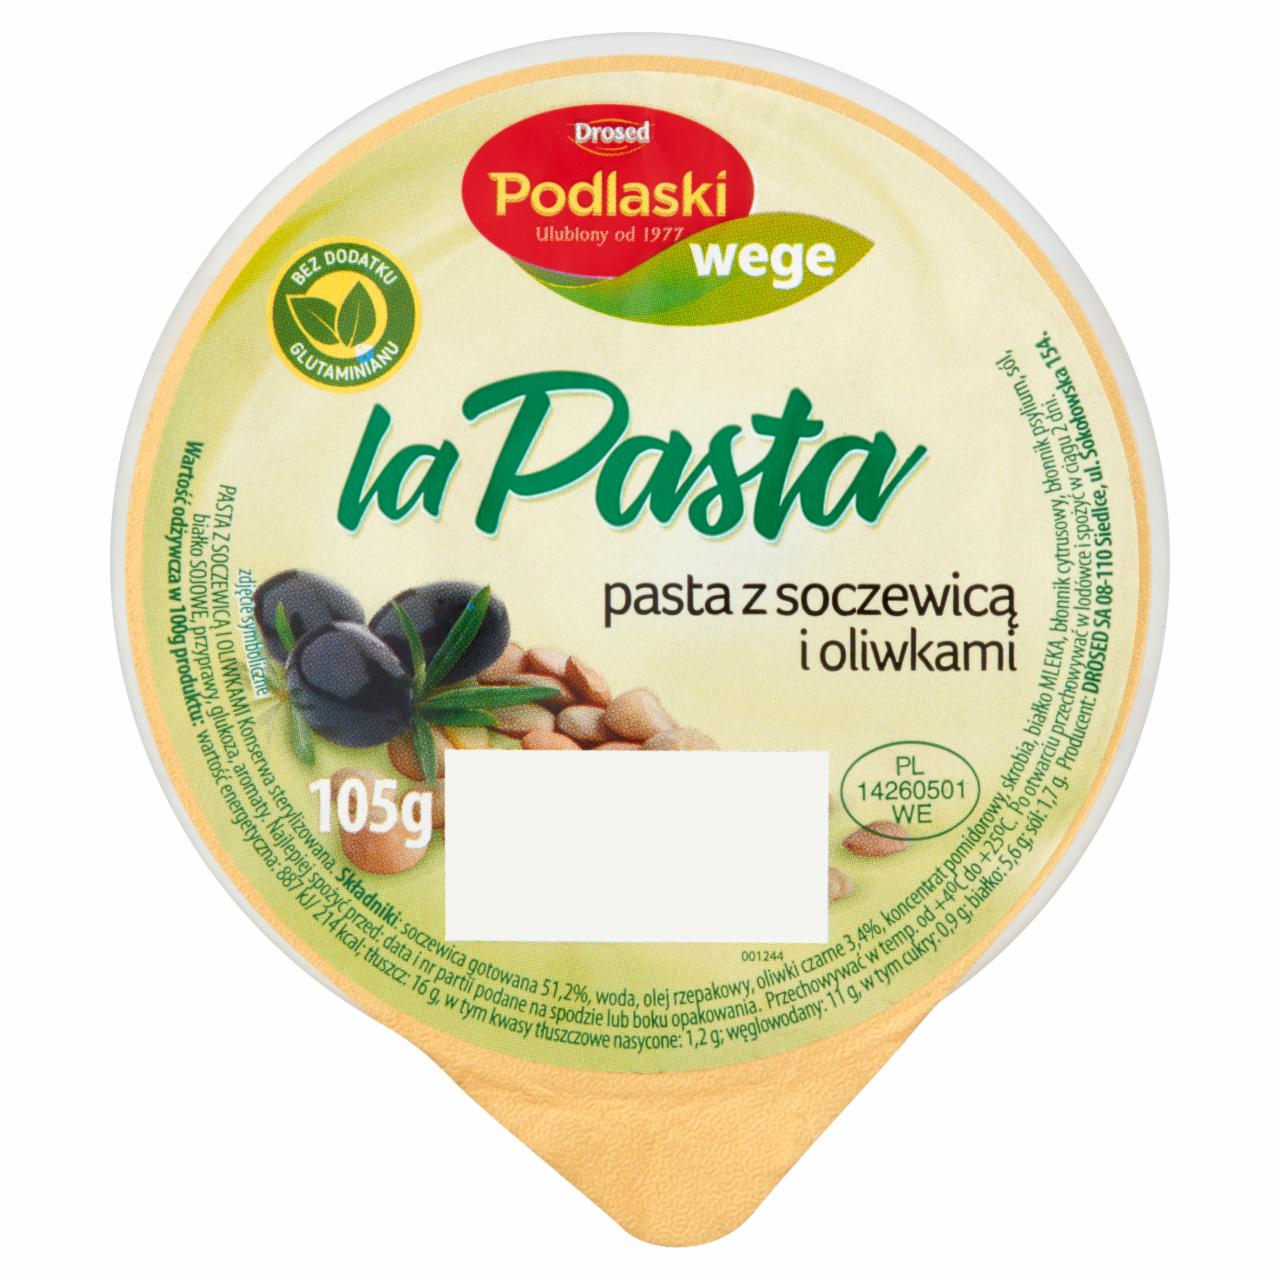 Zdjęcia - Drosed Podlaski wege la Pasta Pasta z soczewicą i oliwkami 105 g